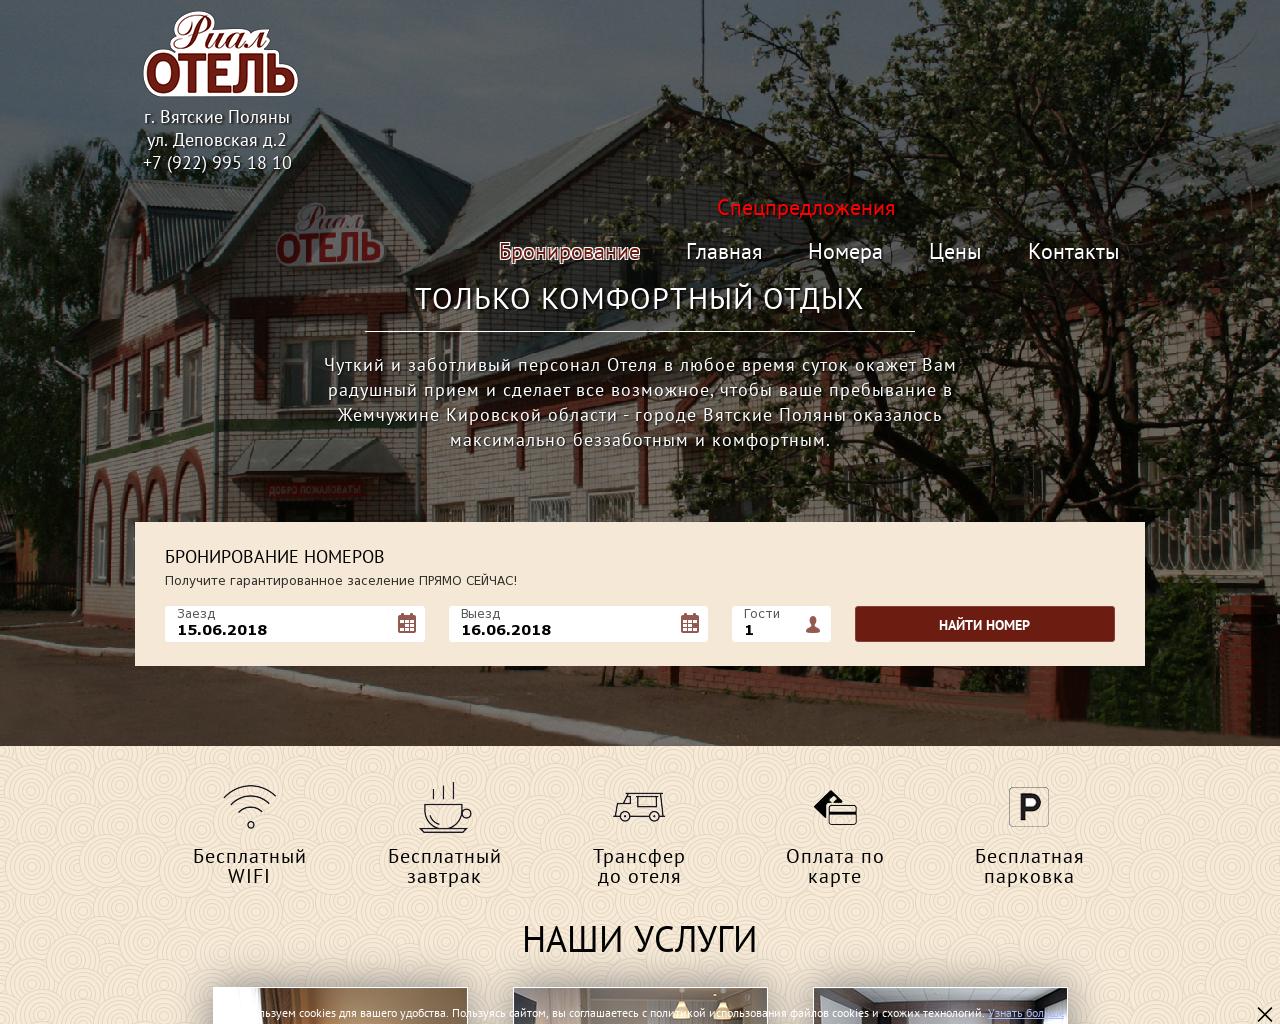 Изображение сайта hotelvp.ru в разрешении 1280x1024